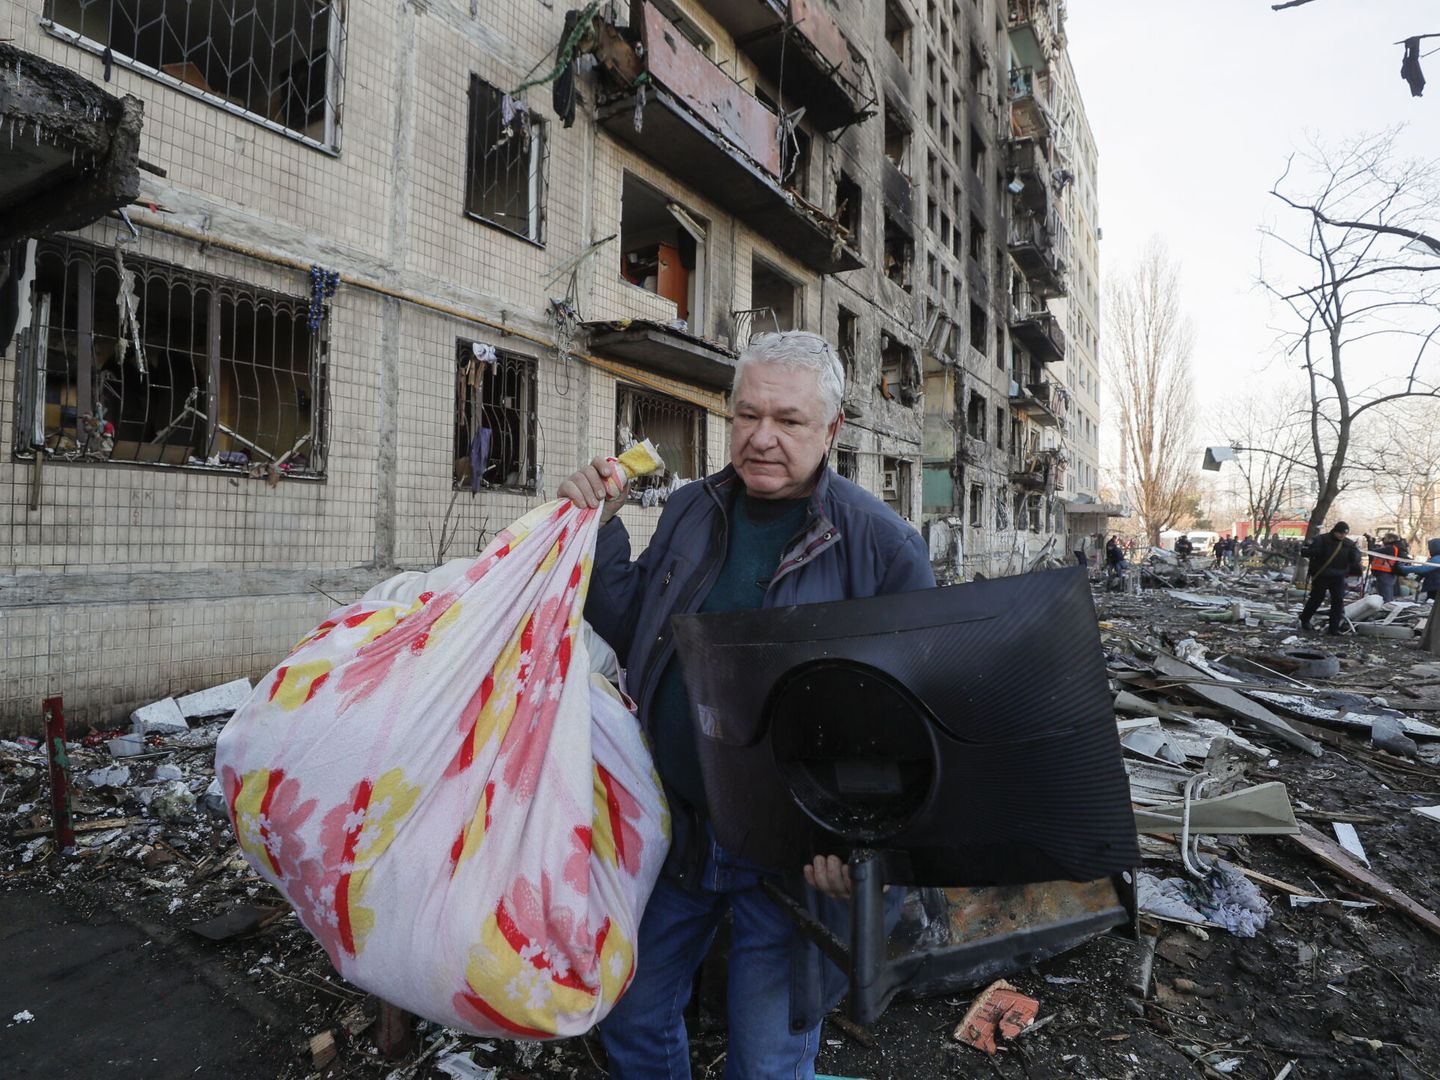 Un hombre acarrea sus pertenencias mientras abandona su casa destruida por los bombardeos rusos. (EFE/SERGEY DOLZHENKO)